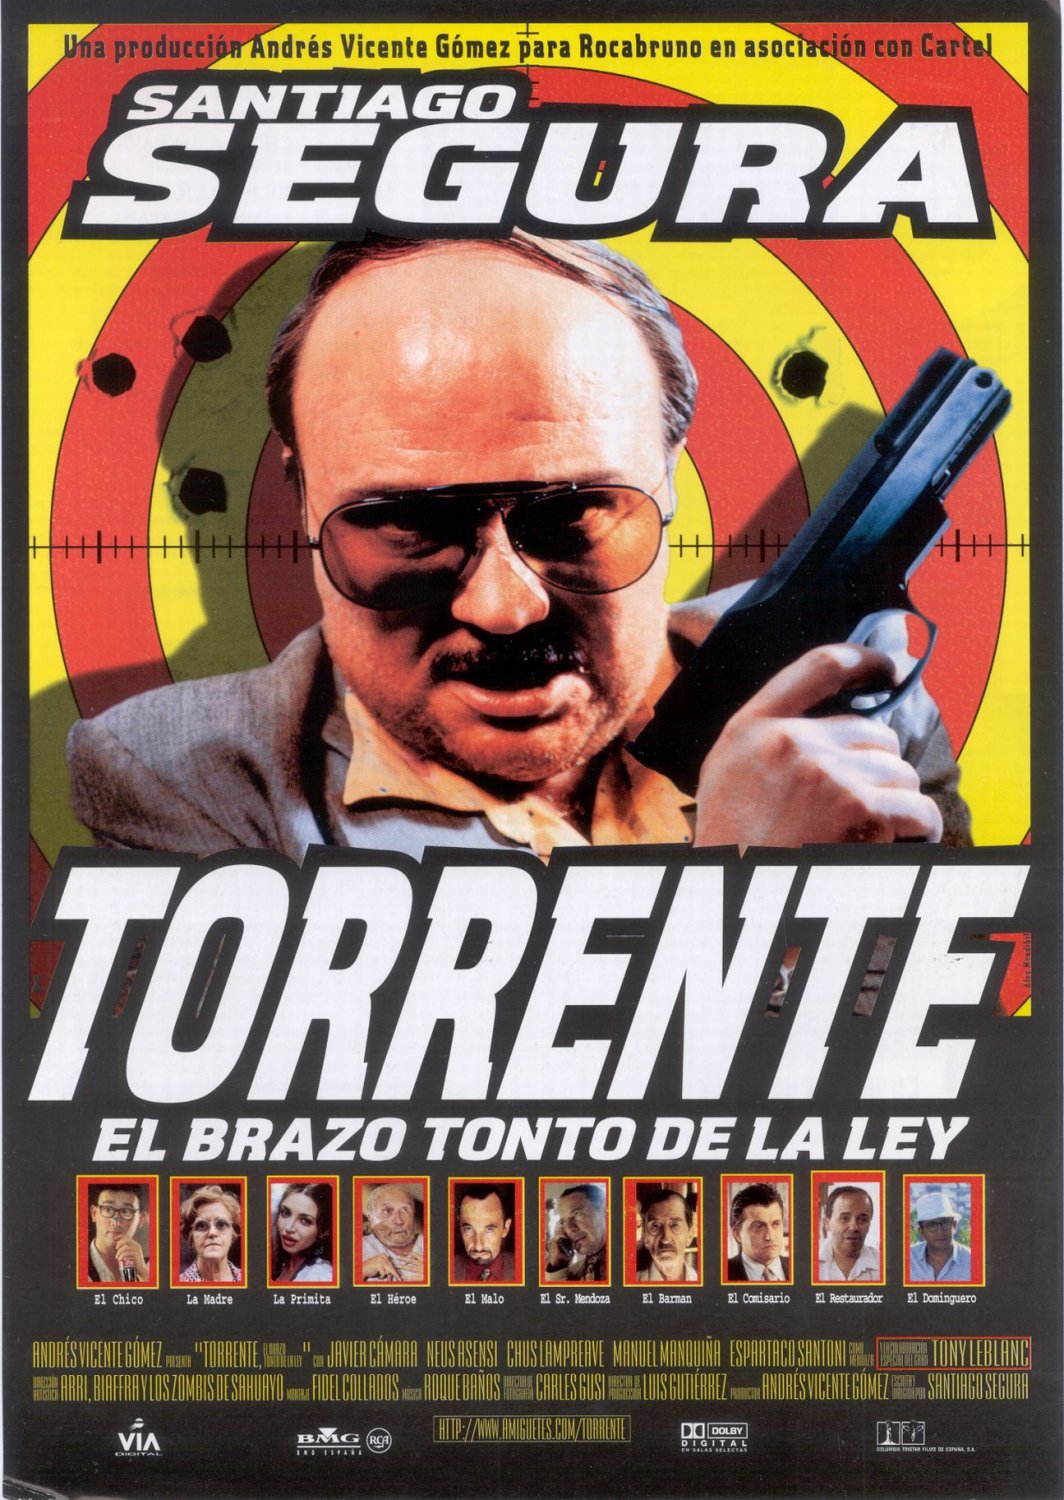 Extra Large Movie Poster Image for Torrente, el brazo tonto de la ley 